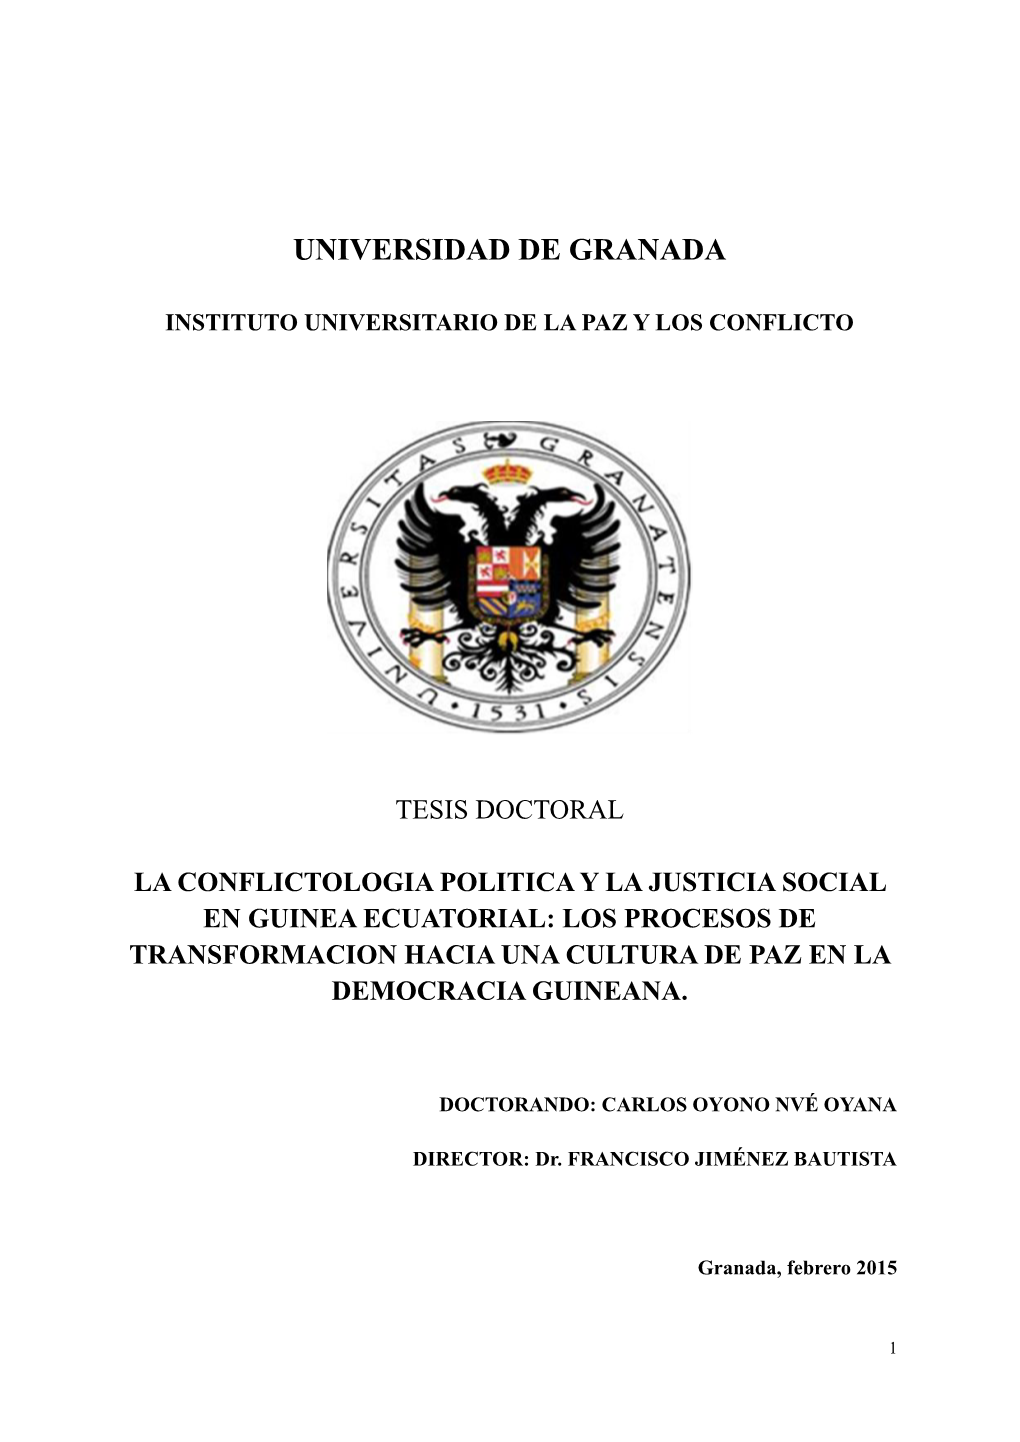 Evolución Histórica De La Violencia Y Los Conflictos Políticos En Guinea Ecuatorial 4.1